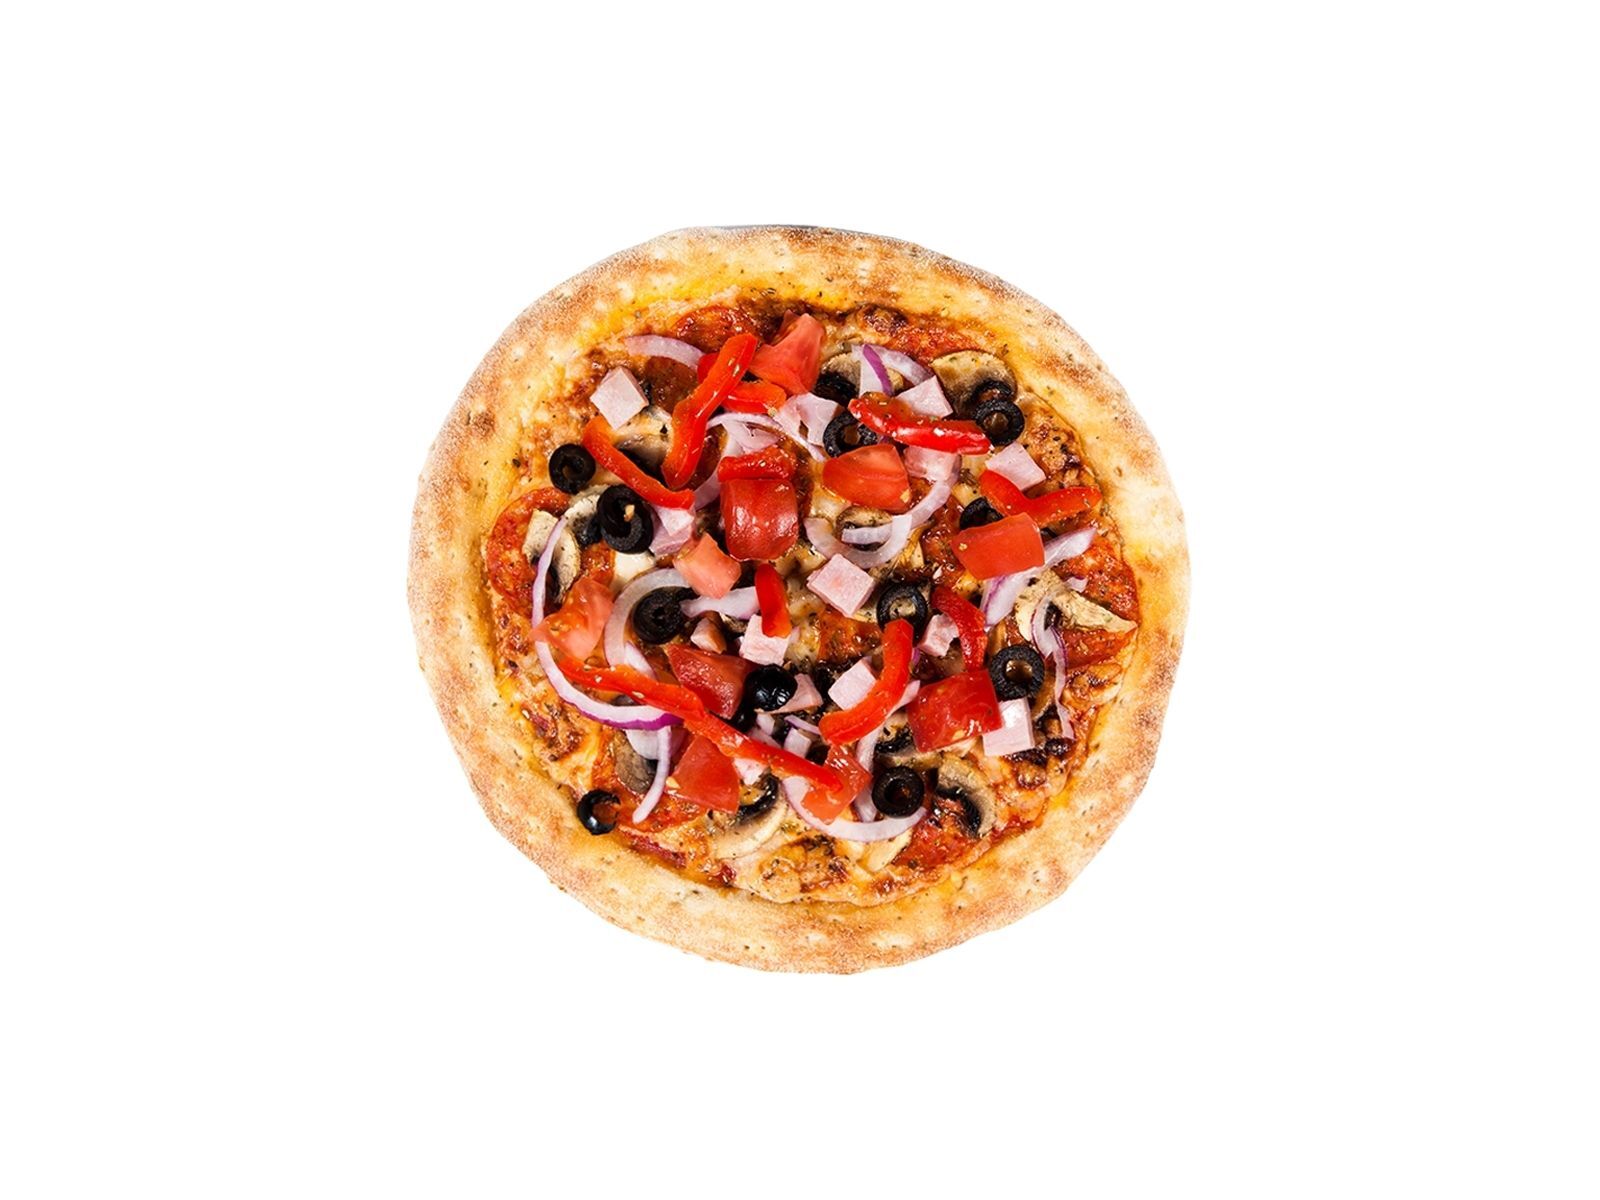 я хочу пиццу с перцем луком пепперони и оливками фото 96